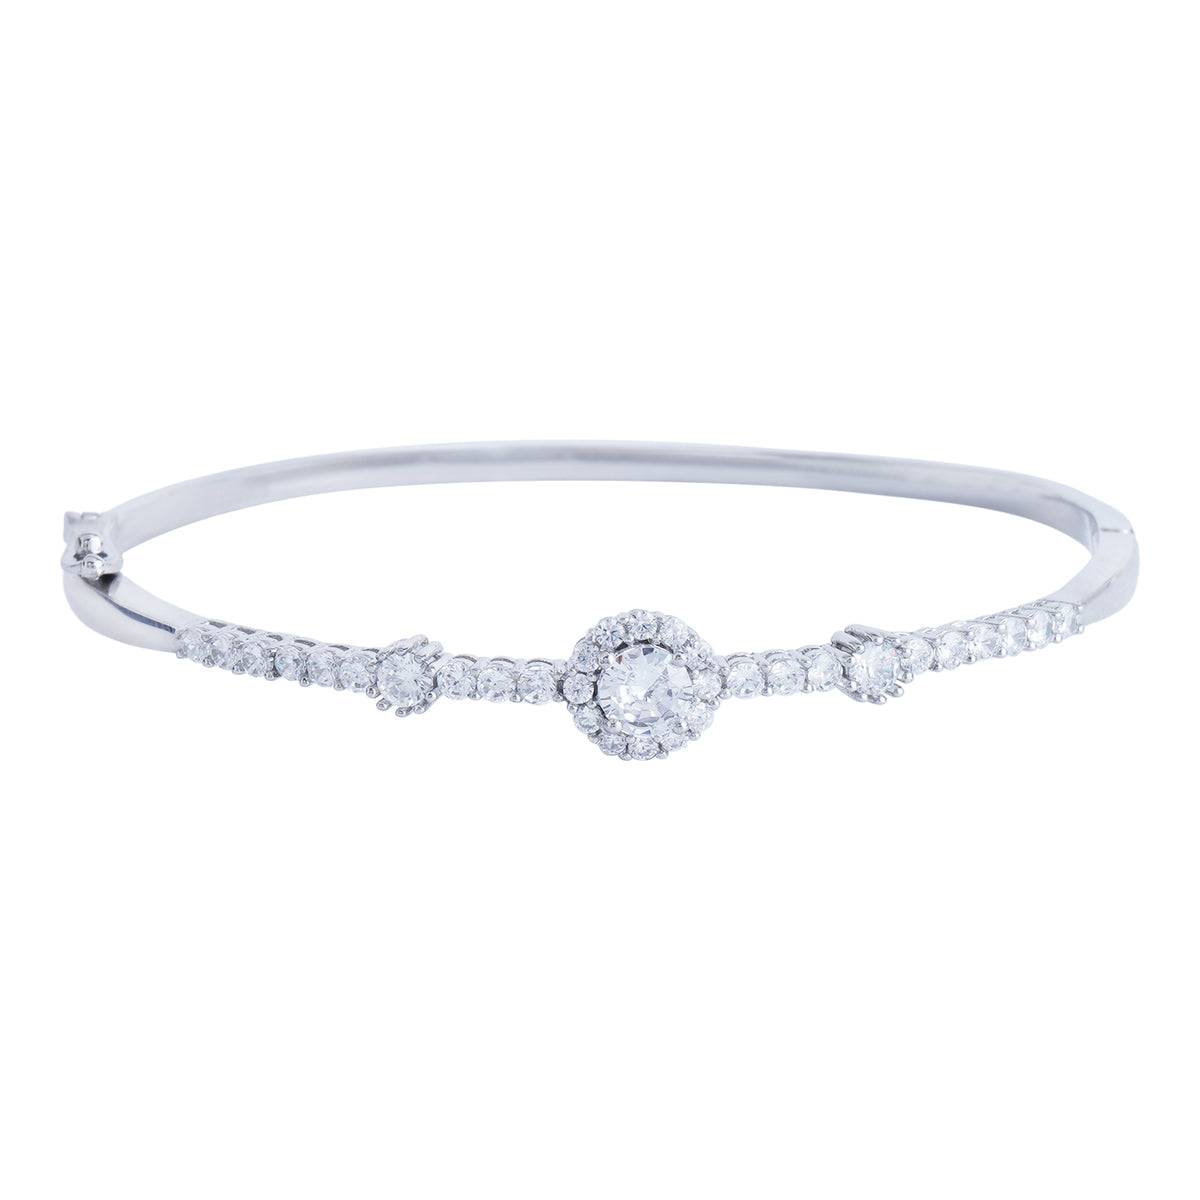 Silver single flower bracelet